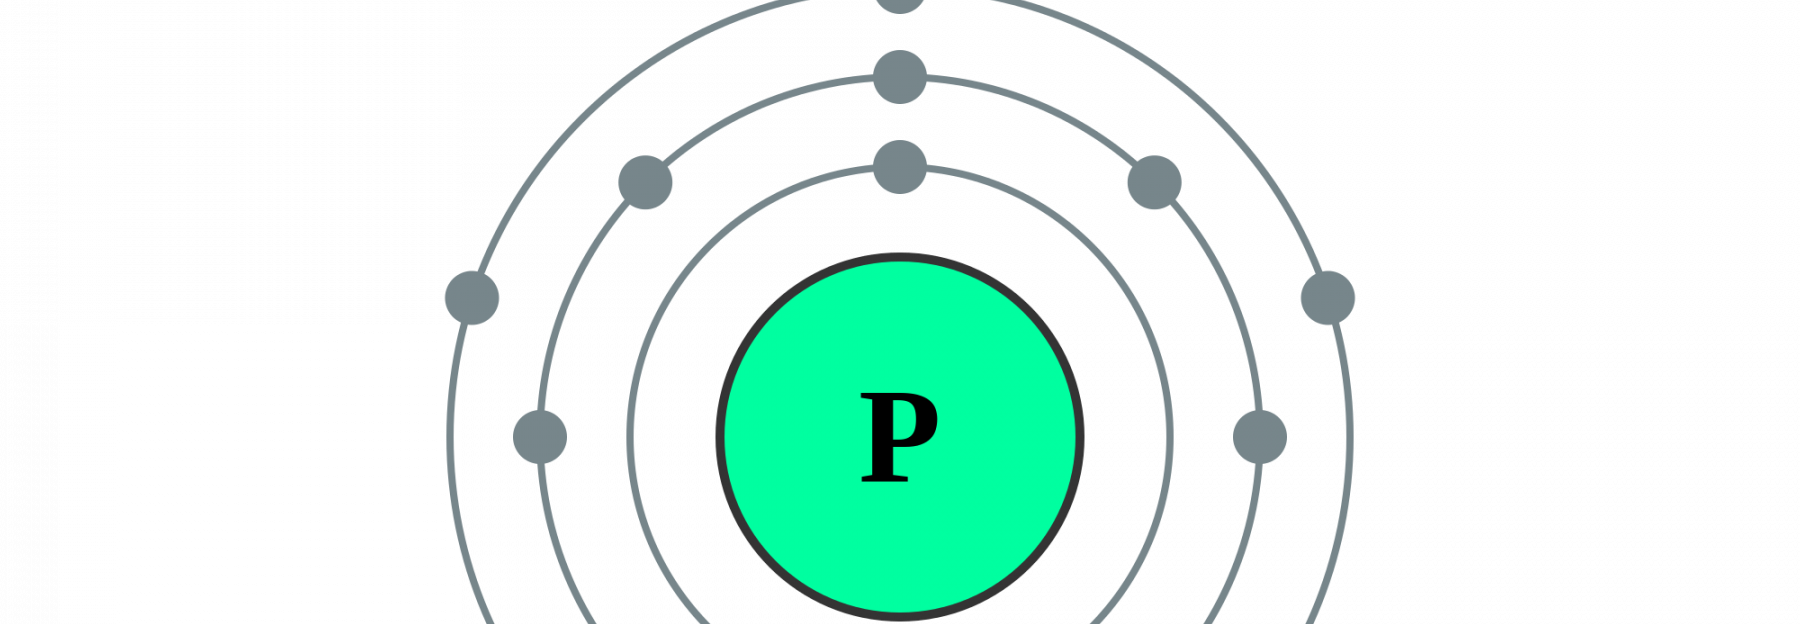 Schematische Darstellung der Elektronenhülle von Phosphor